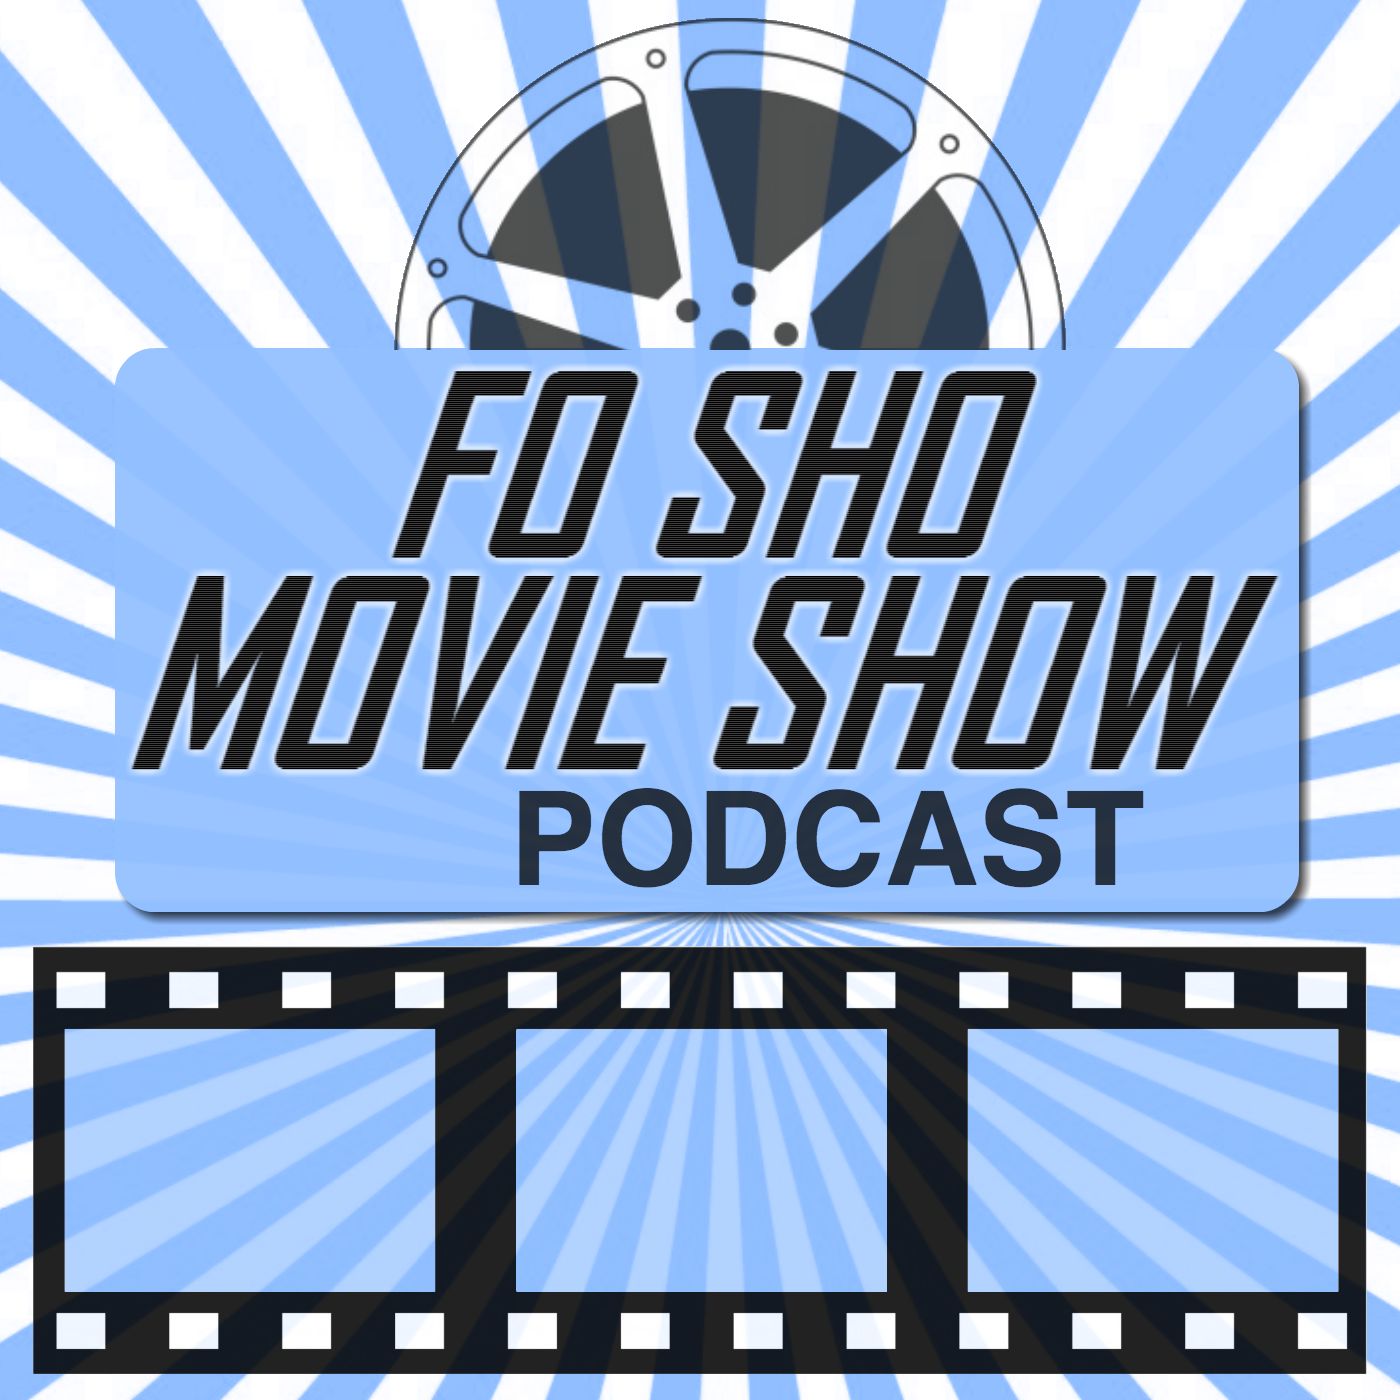 The Fo Sho Movie Show